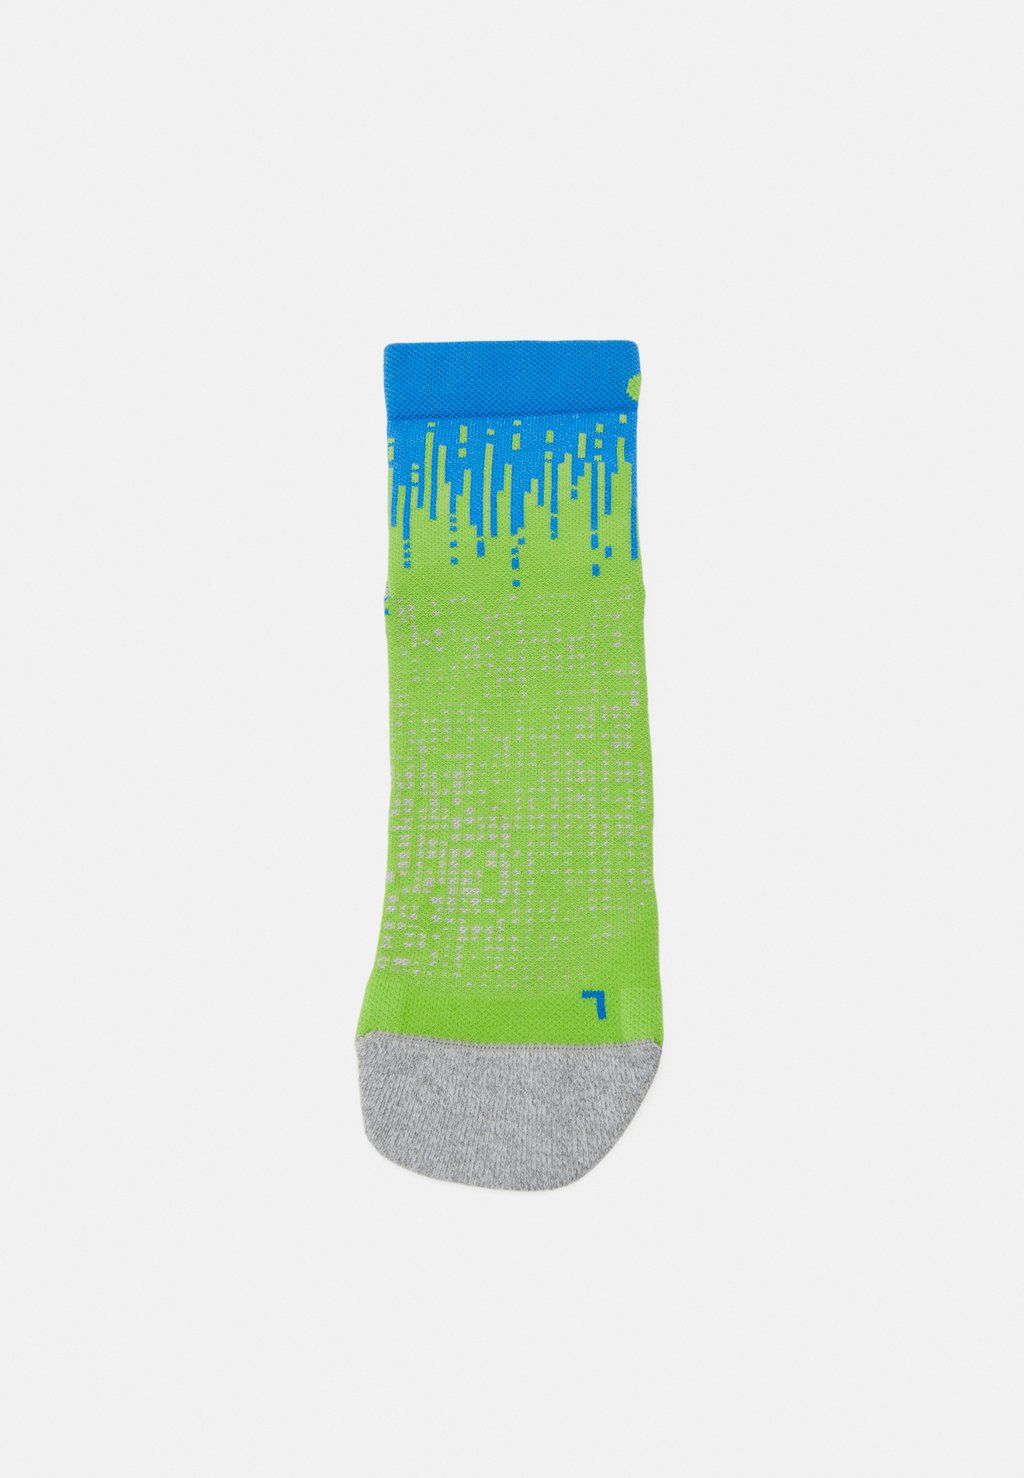 спортивные носки performance run crew sock unisex asics цвет black Спортивные носки PERFORMANCE RUN QUARTER SOCK UNISEX ASICS, неоновый зеленый